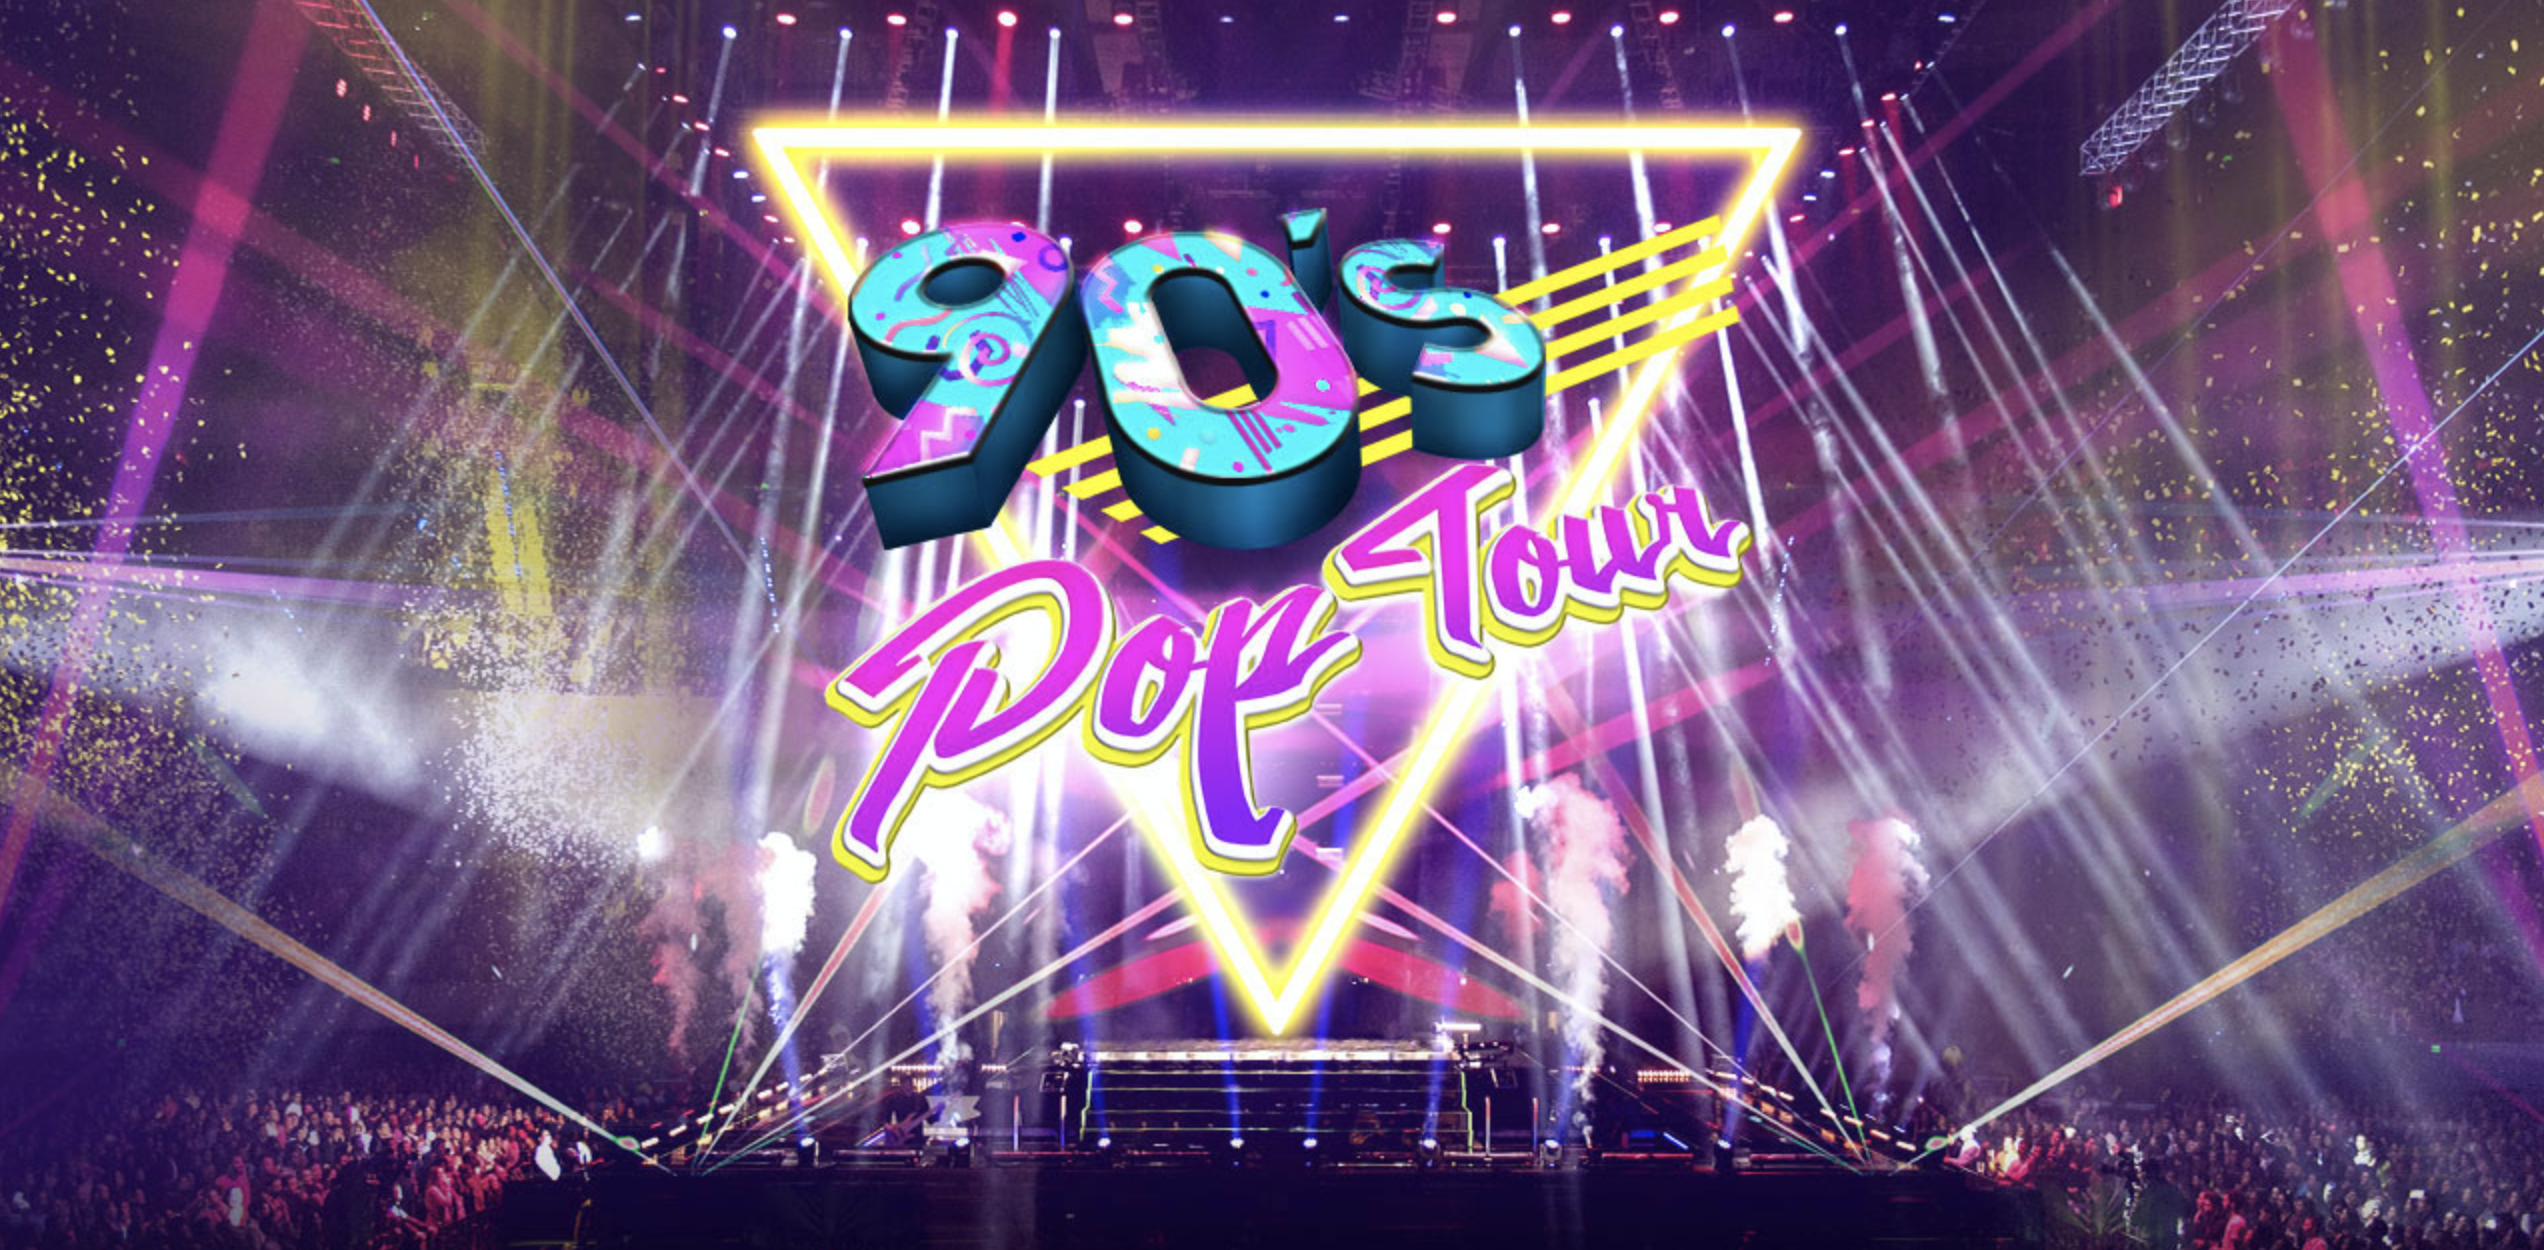 90s pop tour 1 septiembre